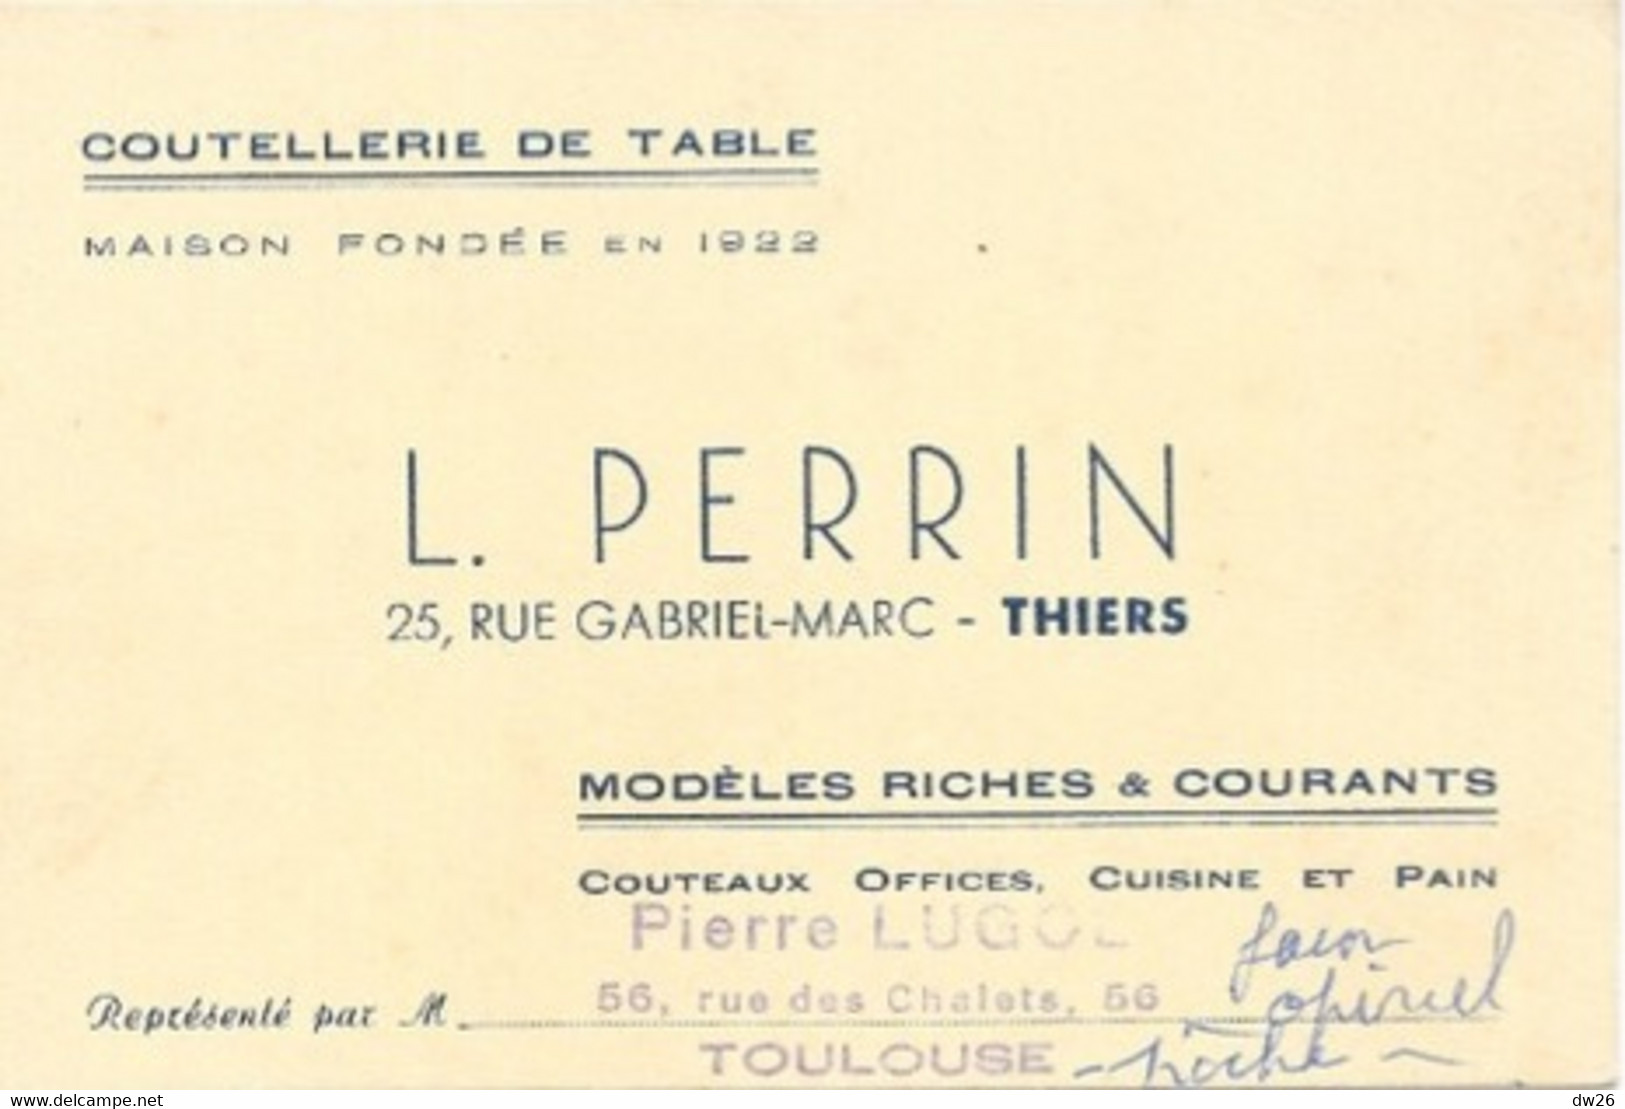 Carte De Visite - Coutellerie De Table L. Perrin, Thiers (couteaux Office, Cuisine) Représentant: Pierre Lugol - Visitekaartjes